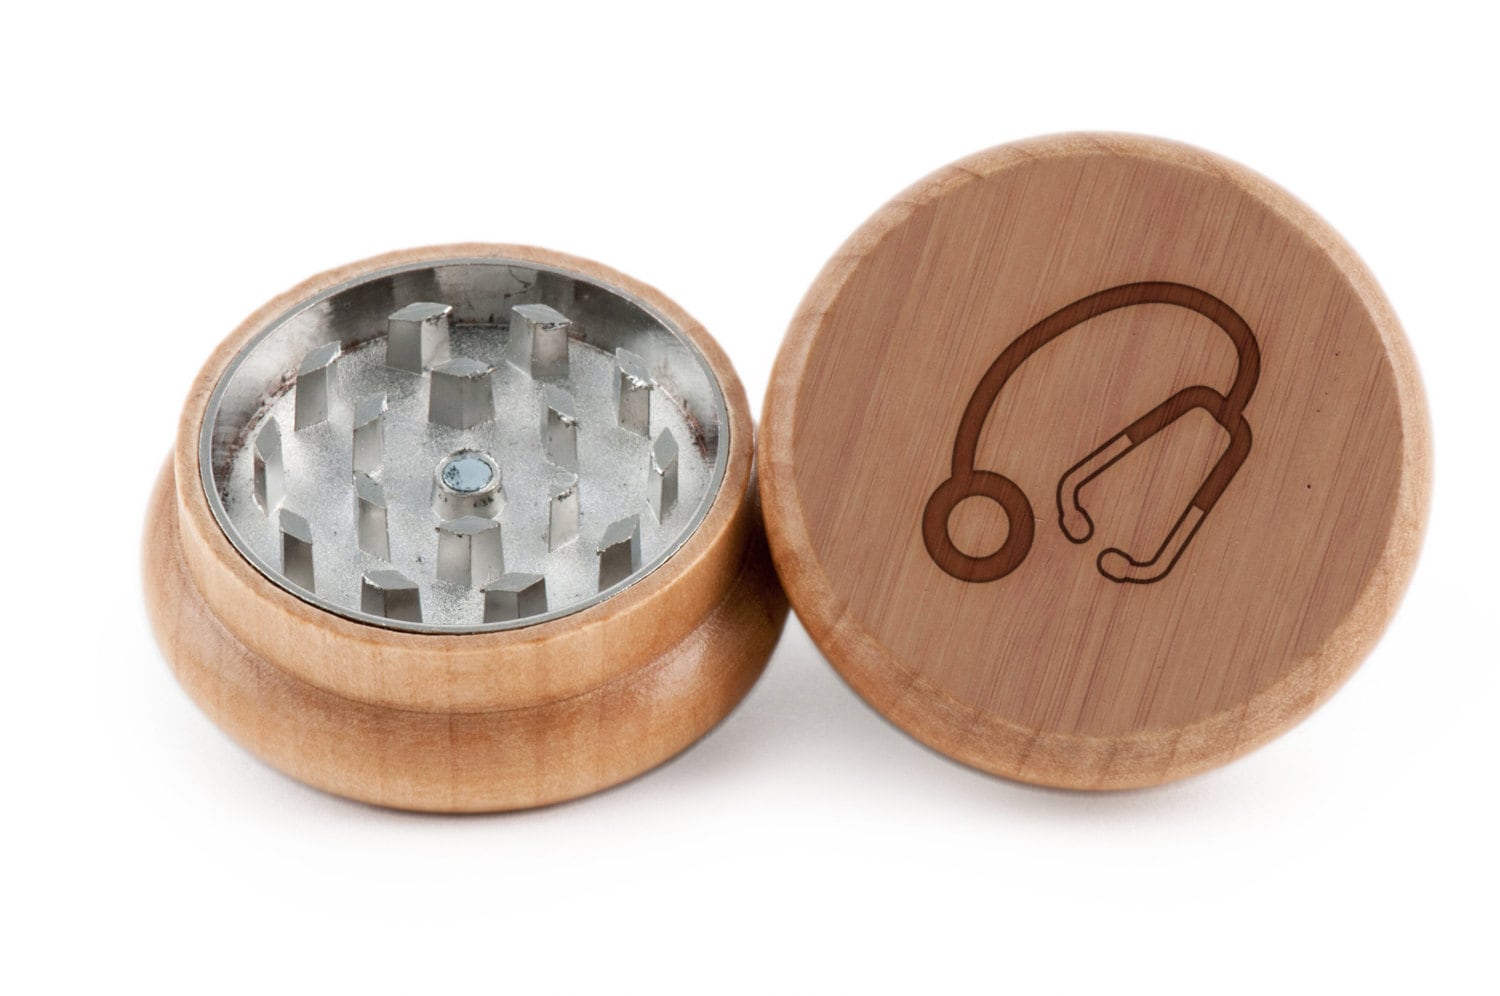 stethoscope herb grinder wood grinder spice grinder